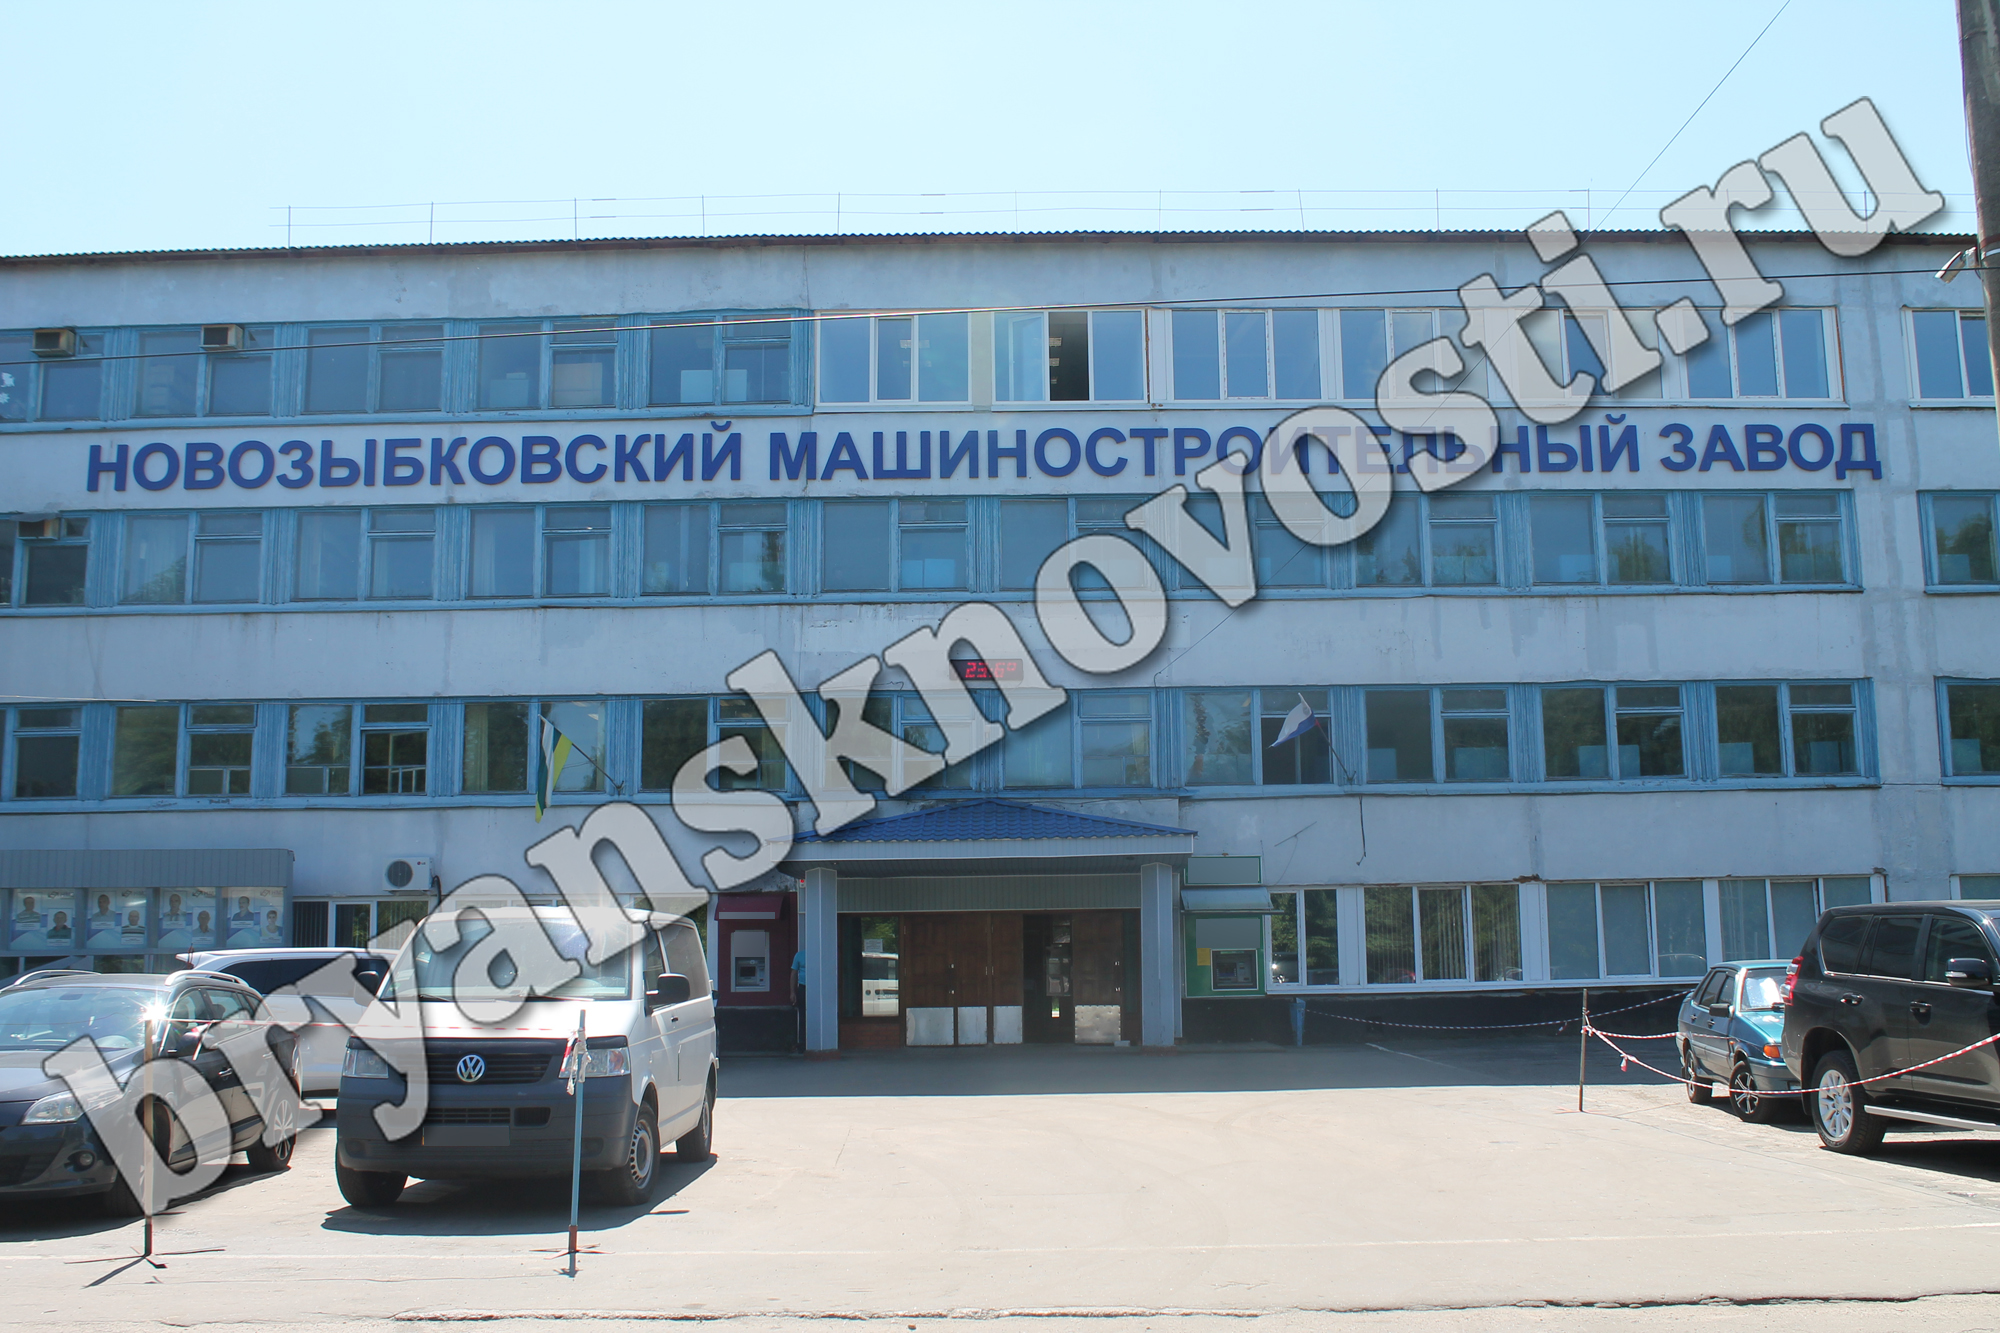 Новозыбковский машиностроительный завод продолжает испытывать трудности, а вместе с этим и прочность сотрудников